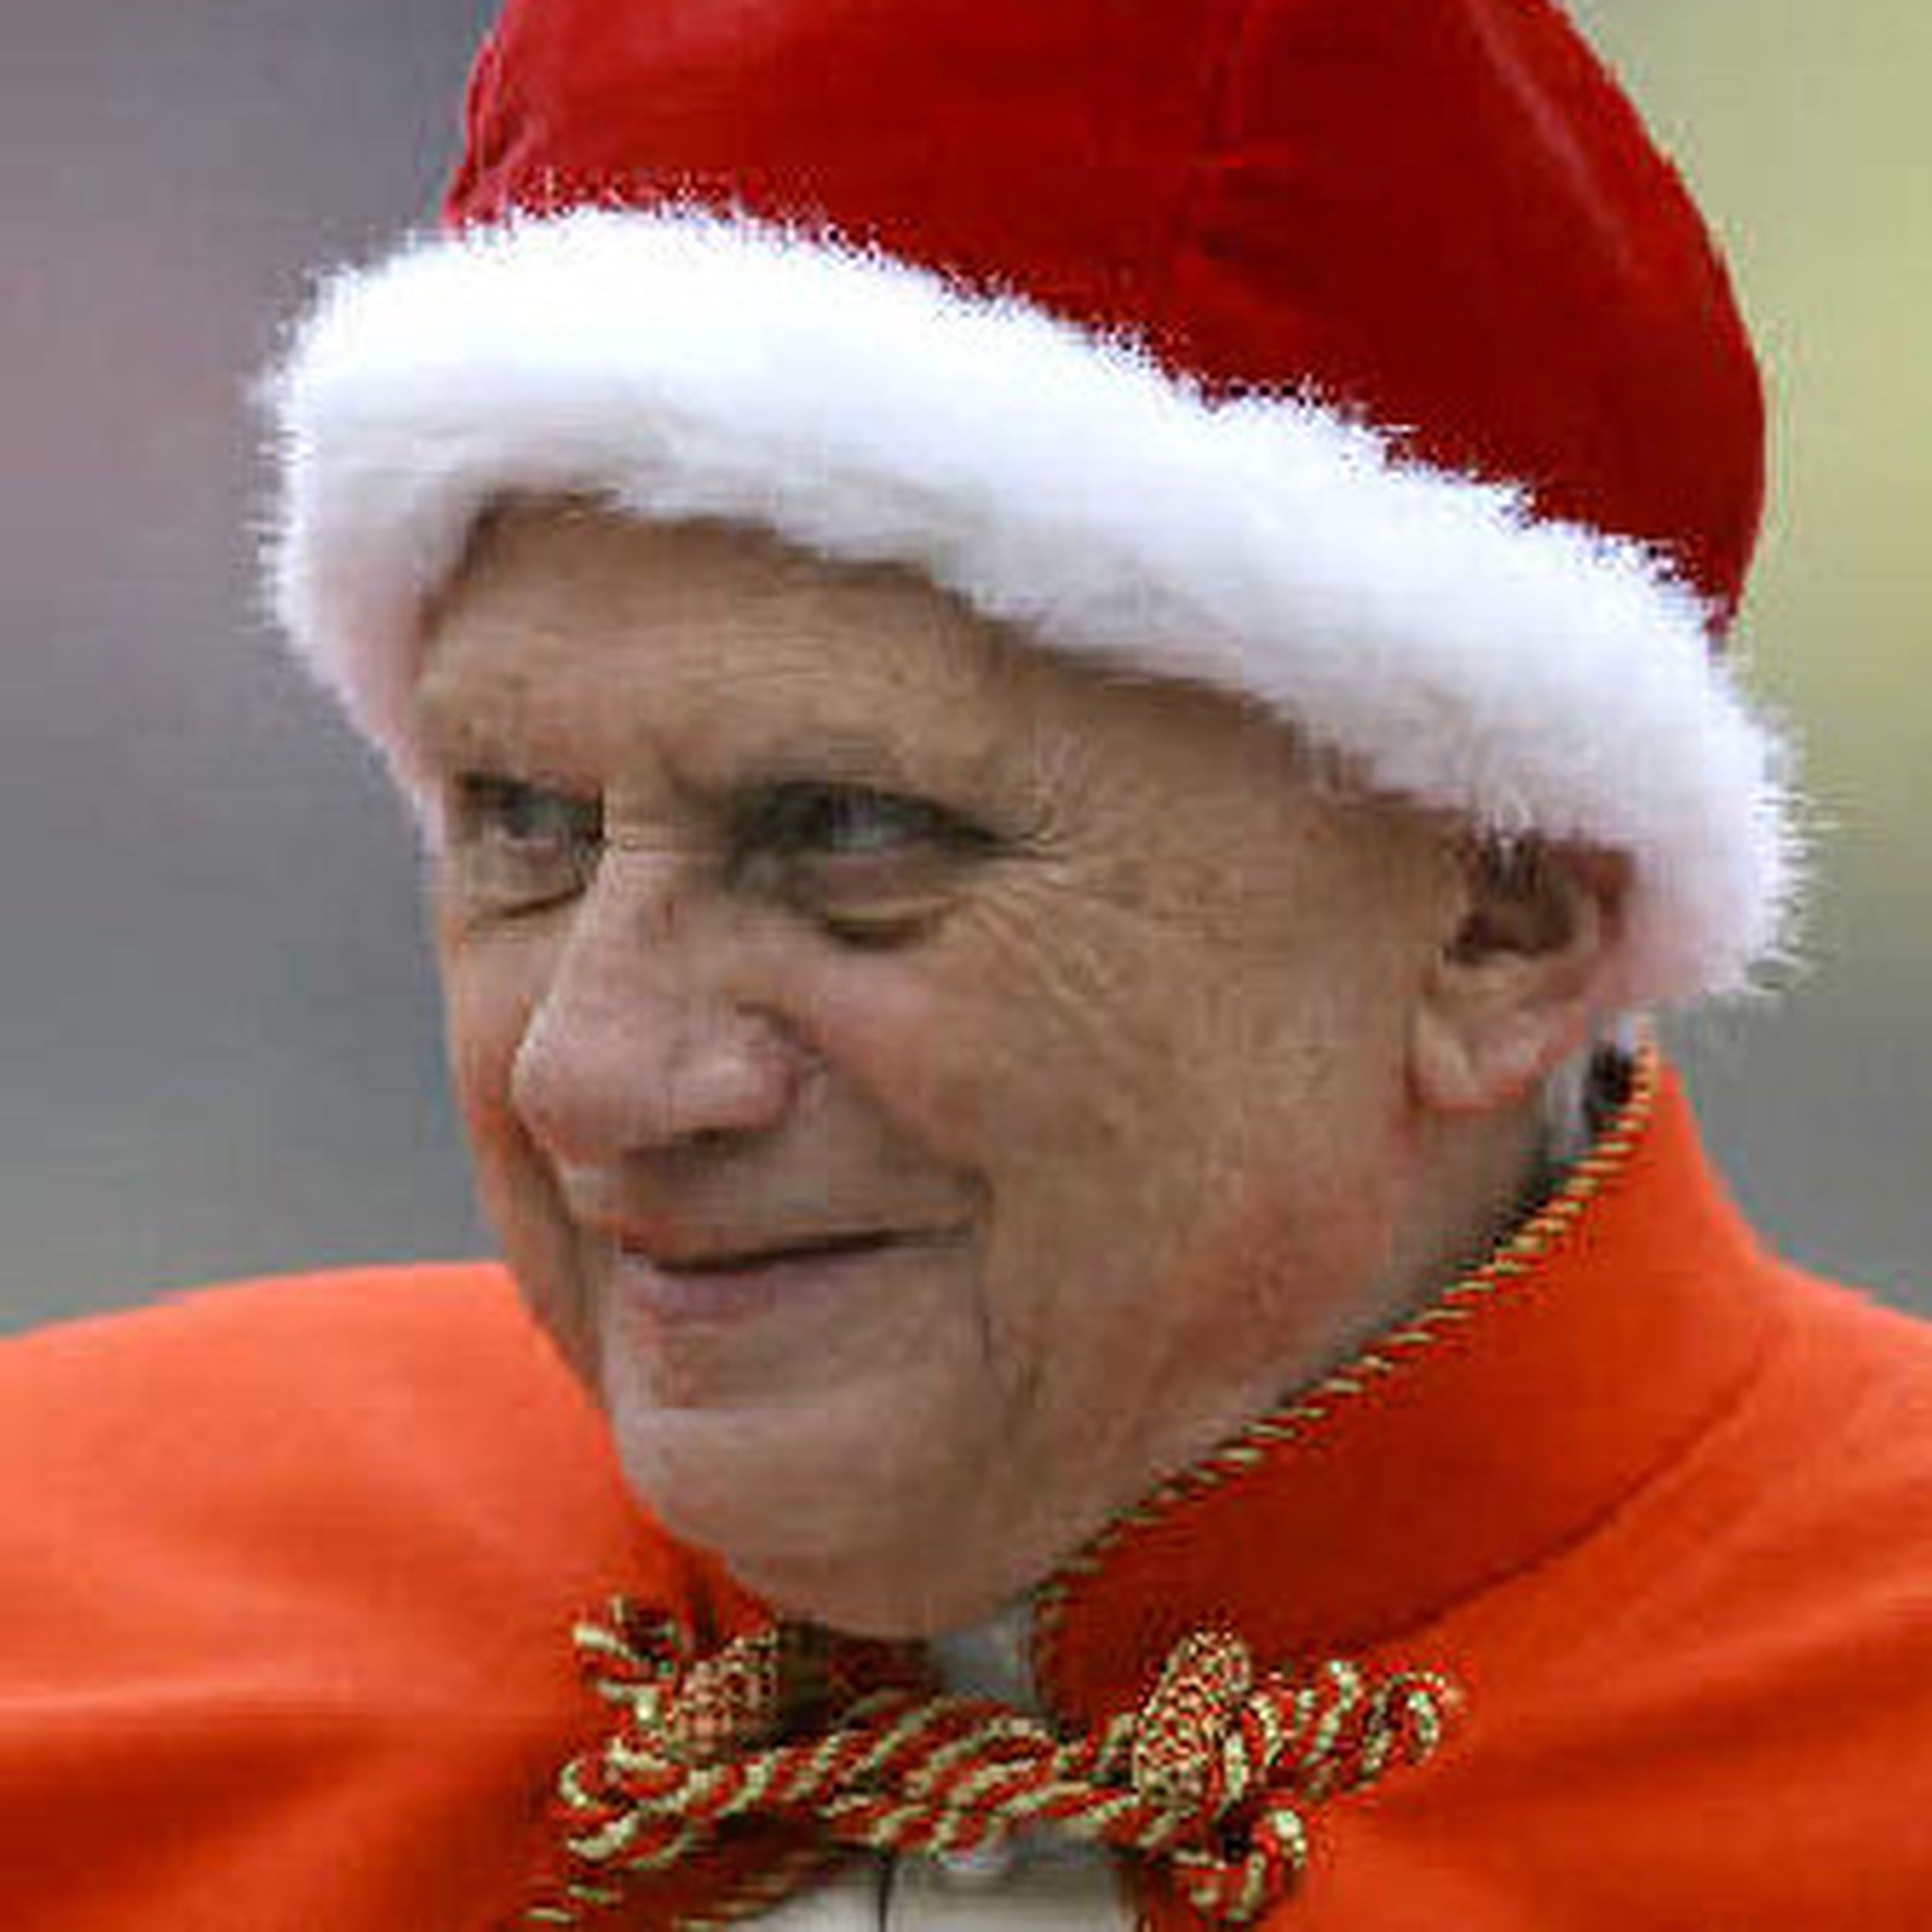 Папа Римский в красной шапке